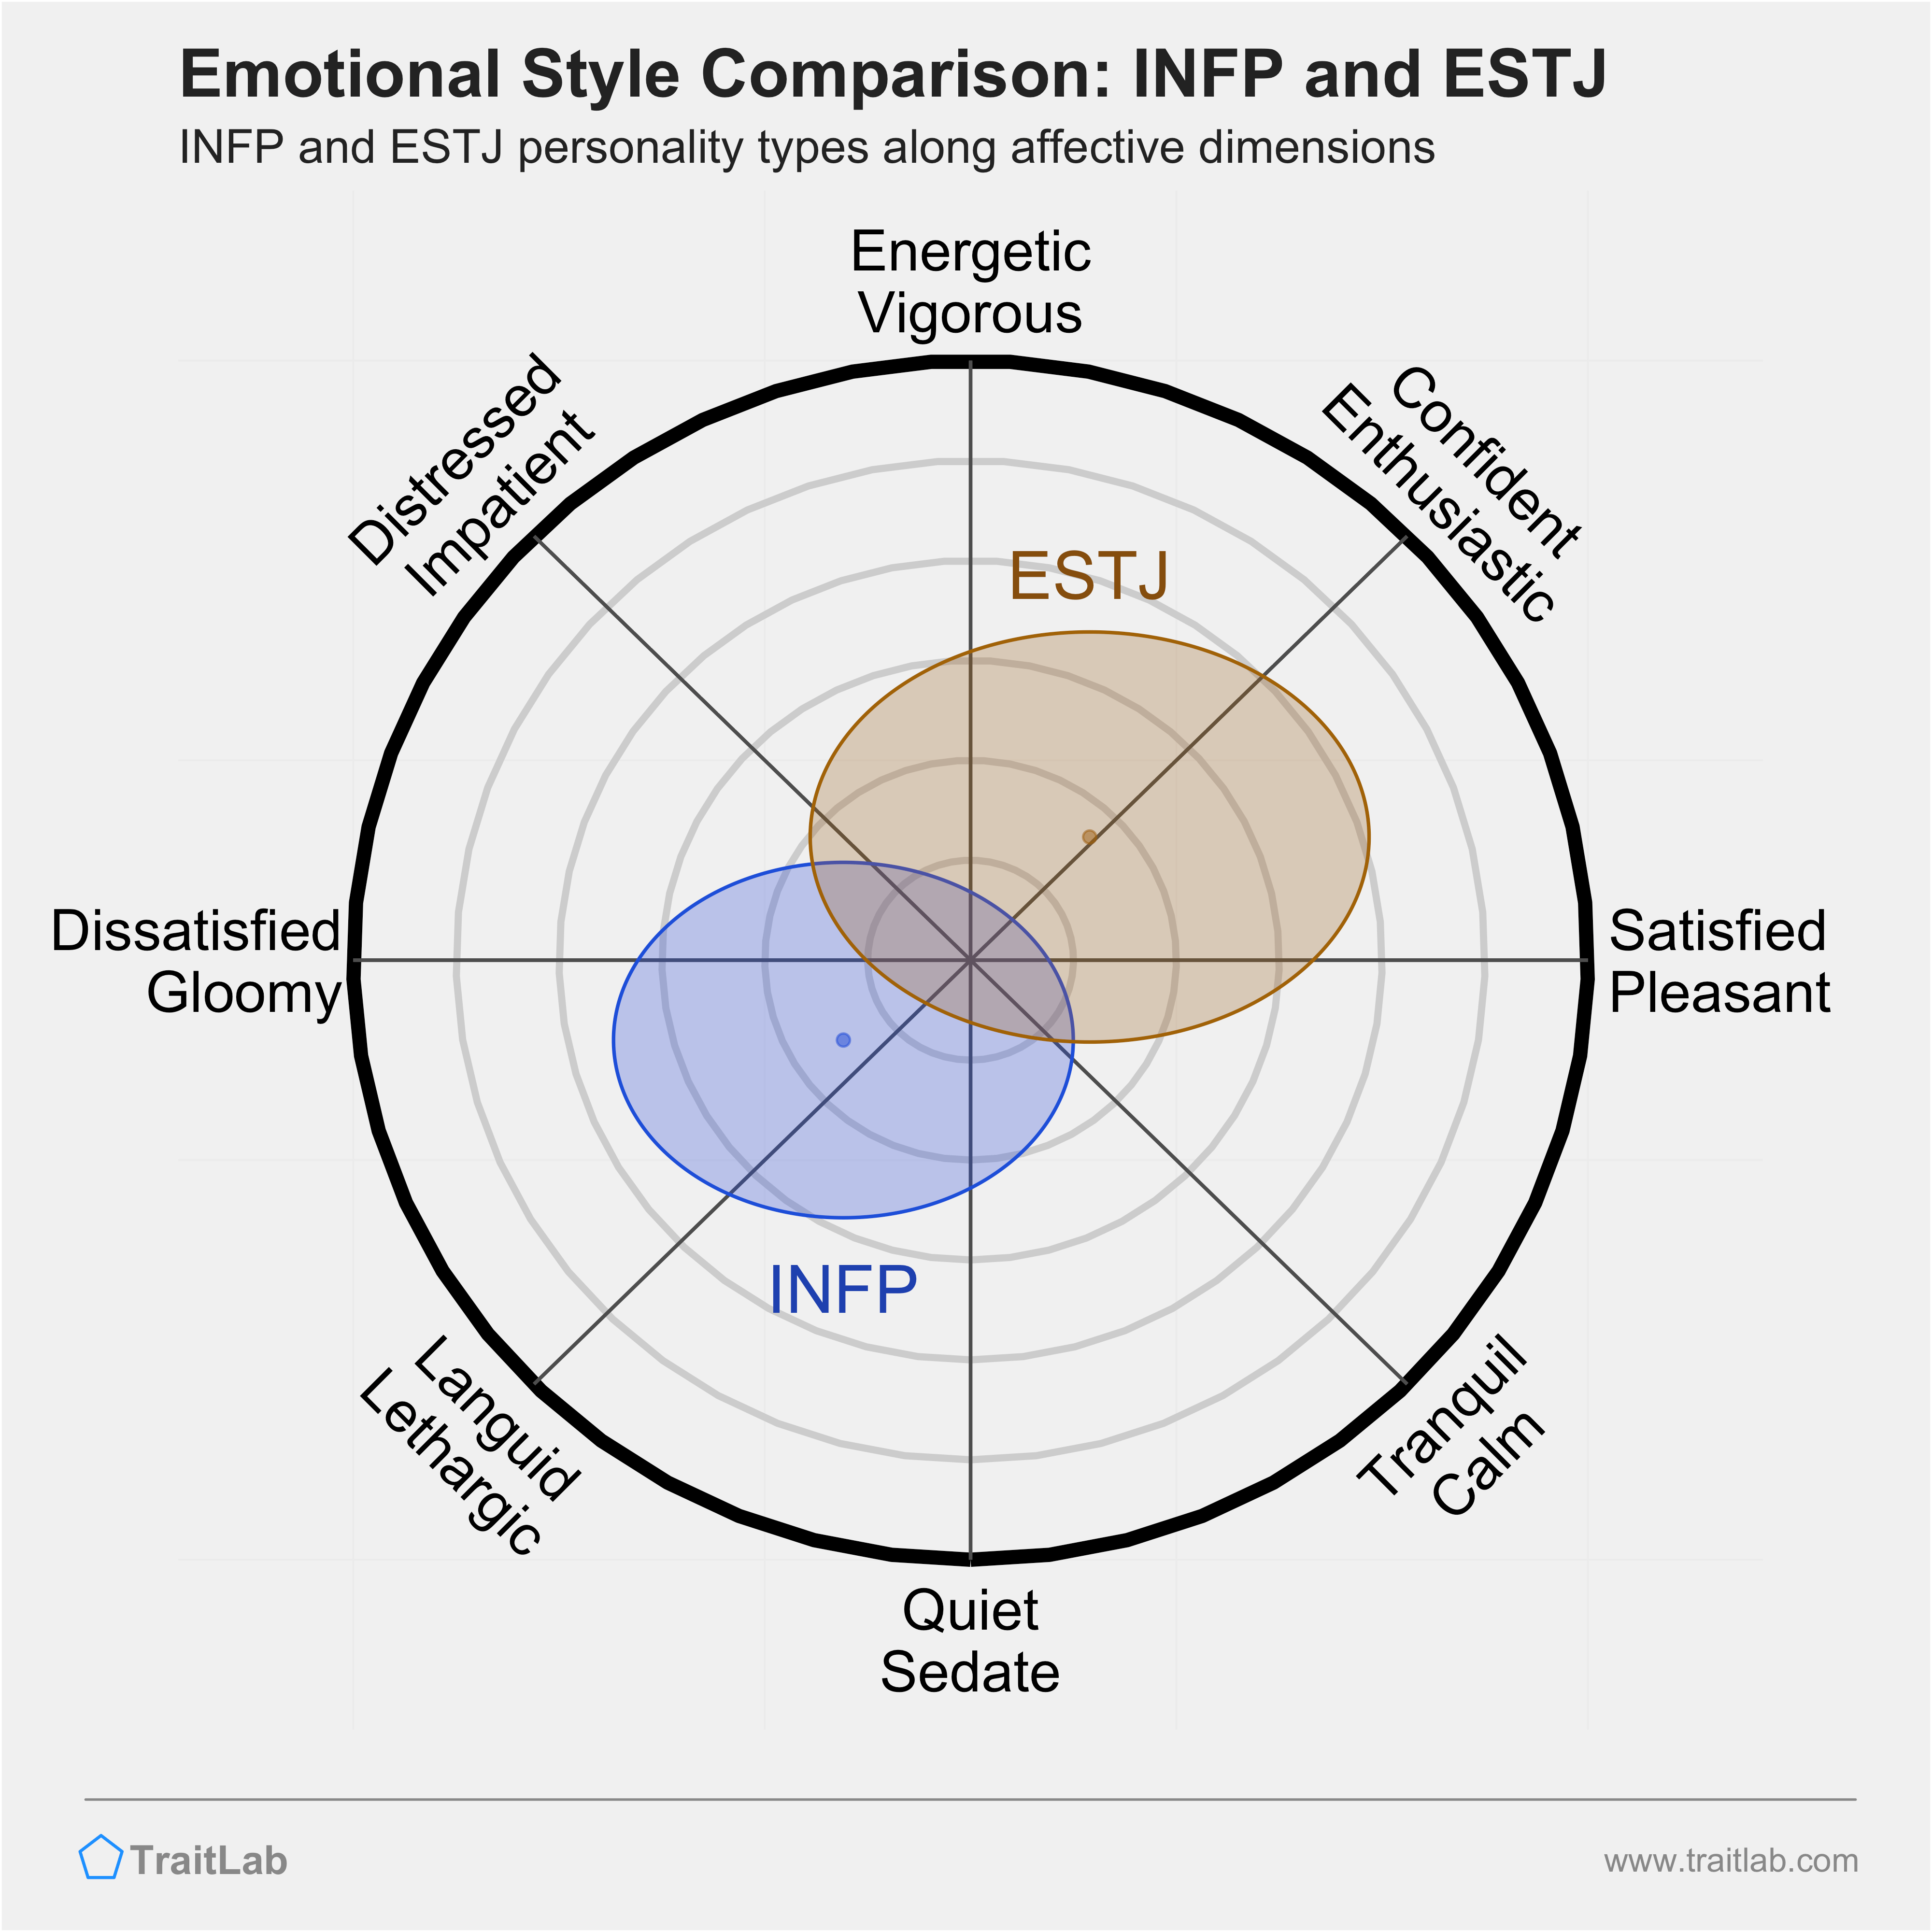 INFP and ESTJ comparison across emotional (affective) dimensions